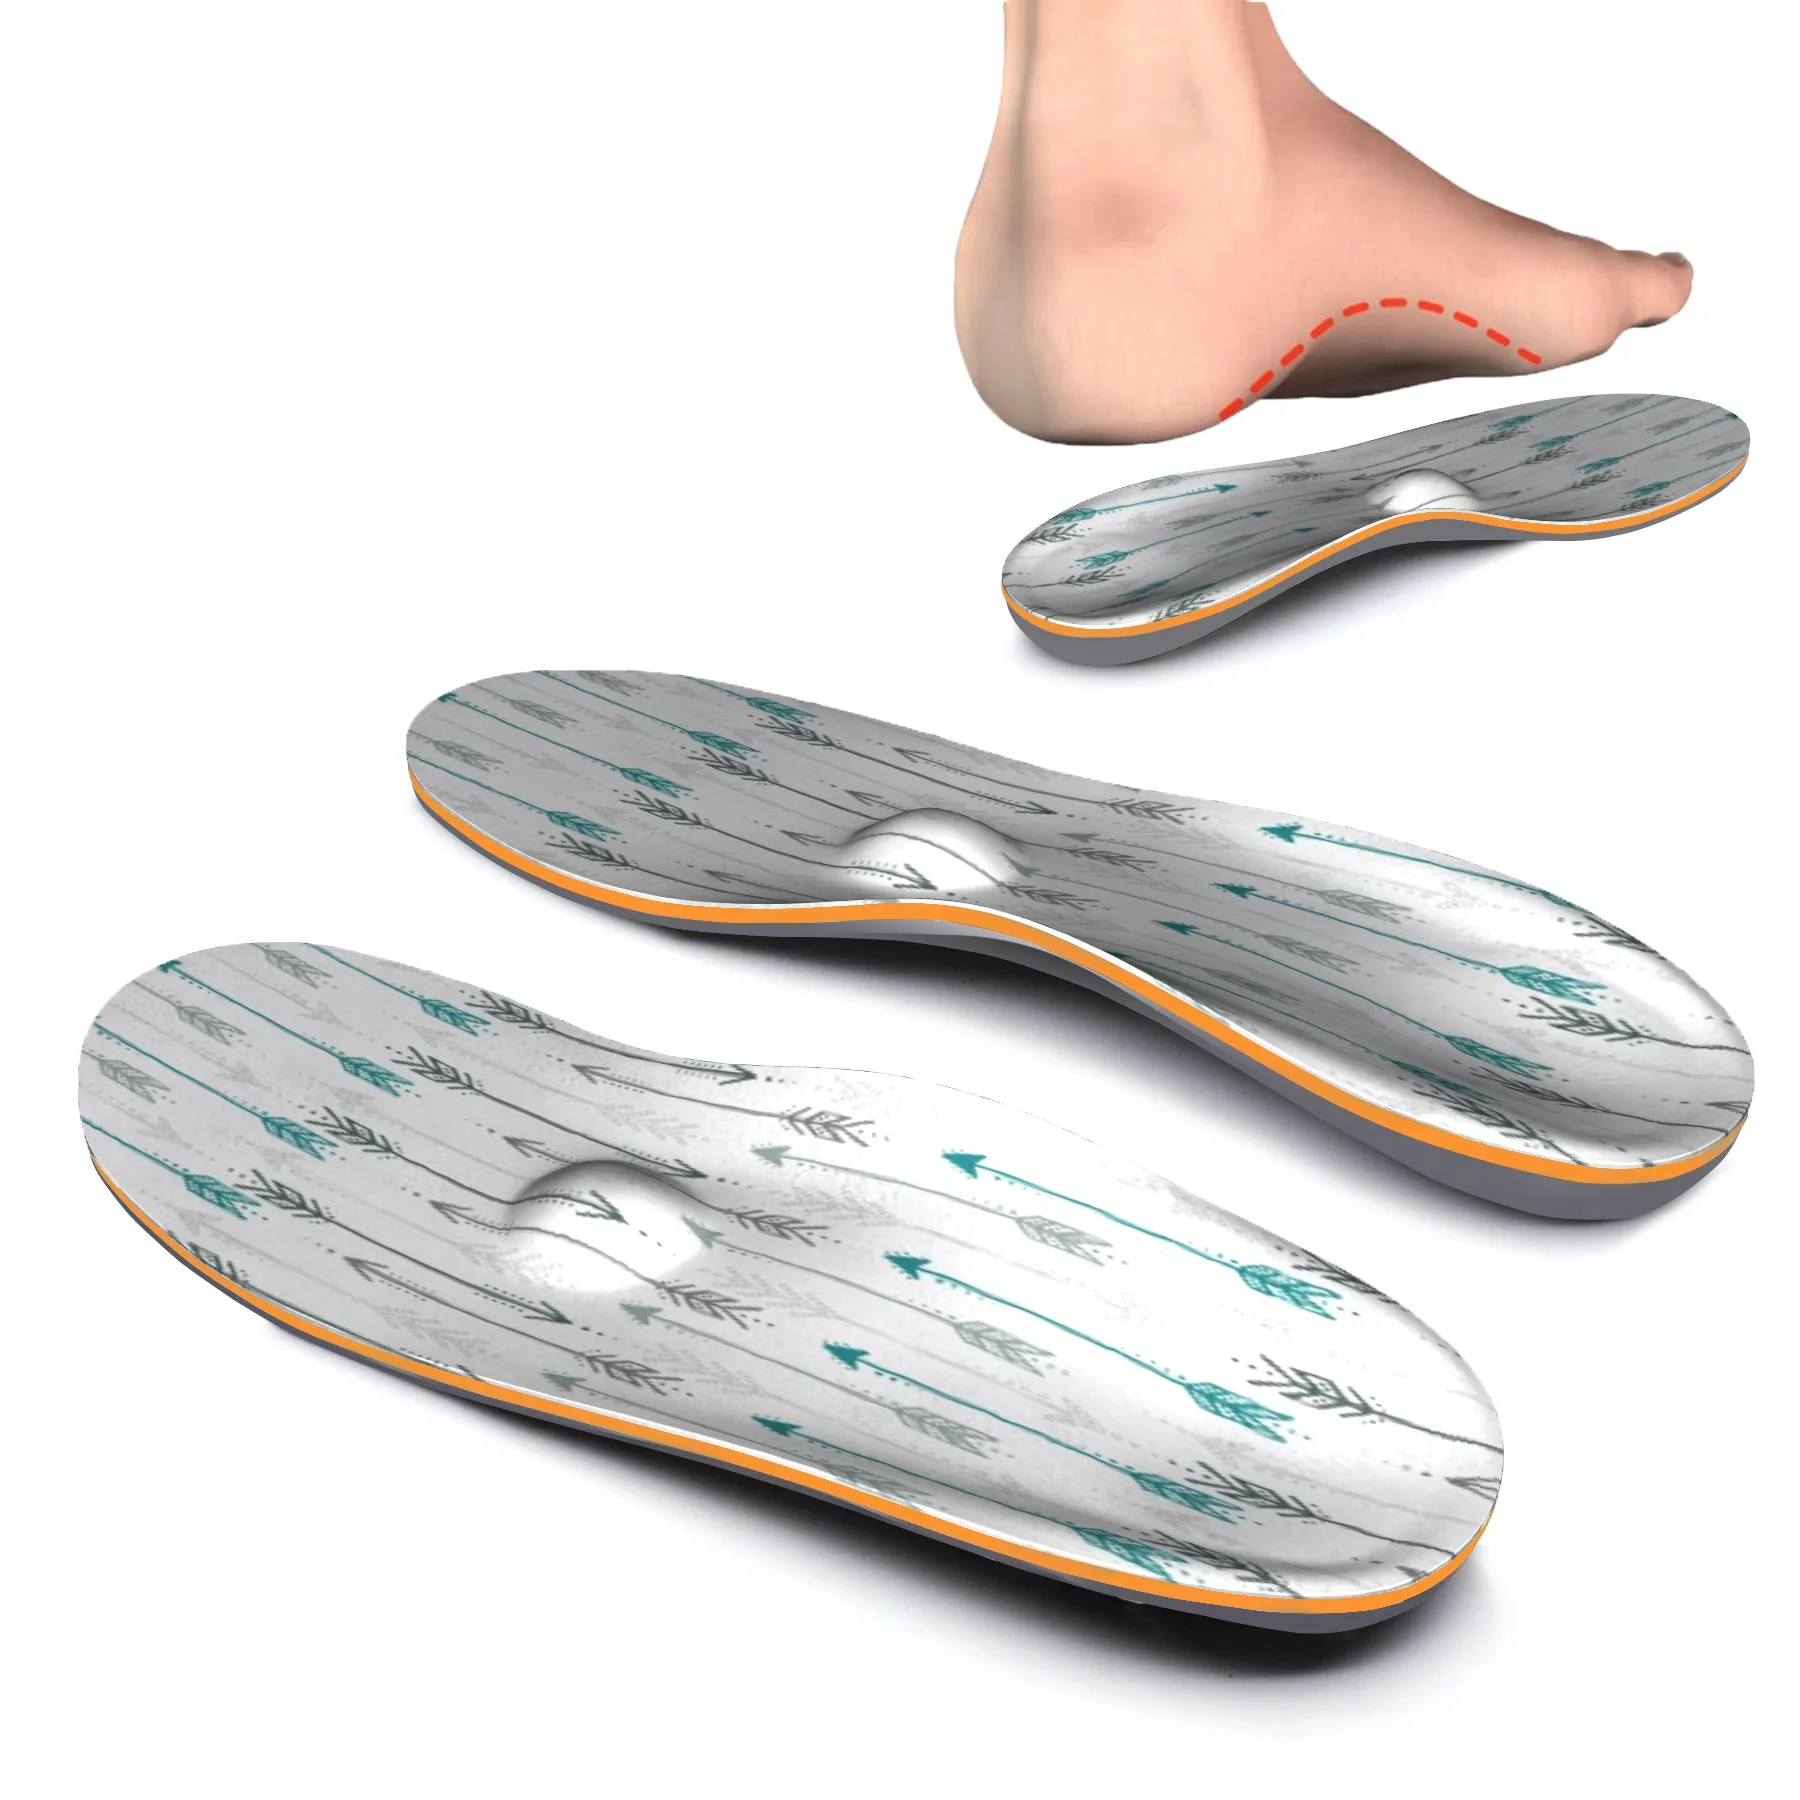 Diseño de flechas ortopédicos de zapato, plantilla ortopédica de plantillas aliviar dolor en el talón para los hombres y las mujeres de espuma de memoria plantillas ortopédicas